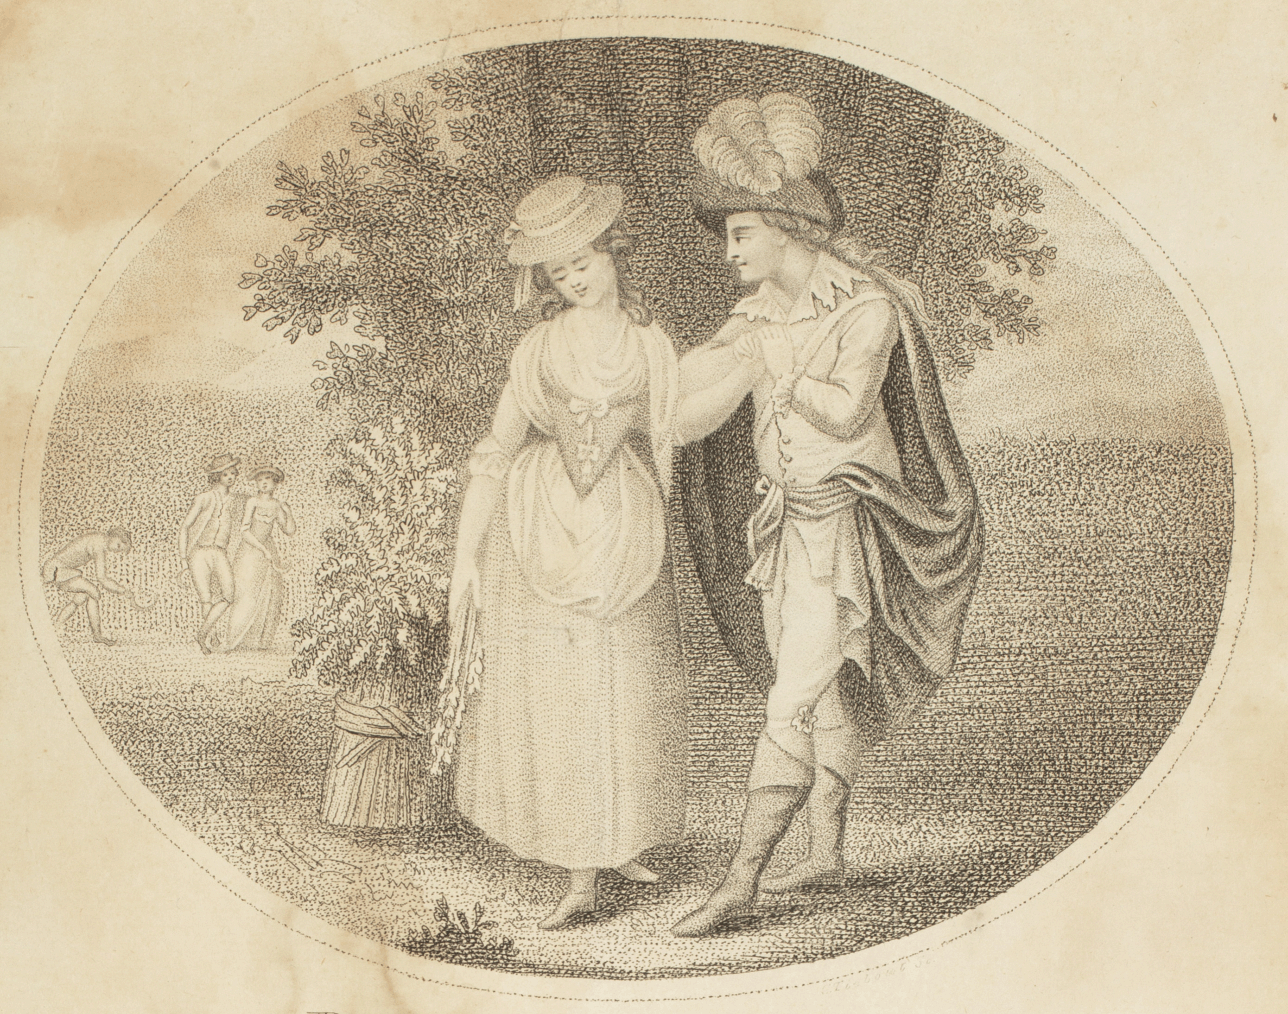 Milk maid of Upper Austria, 18th century. 1823 (engraving)